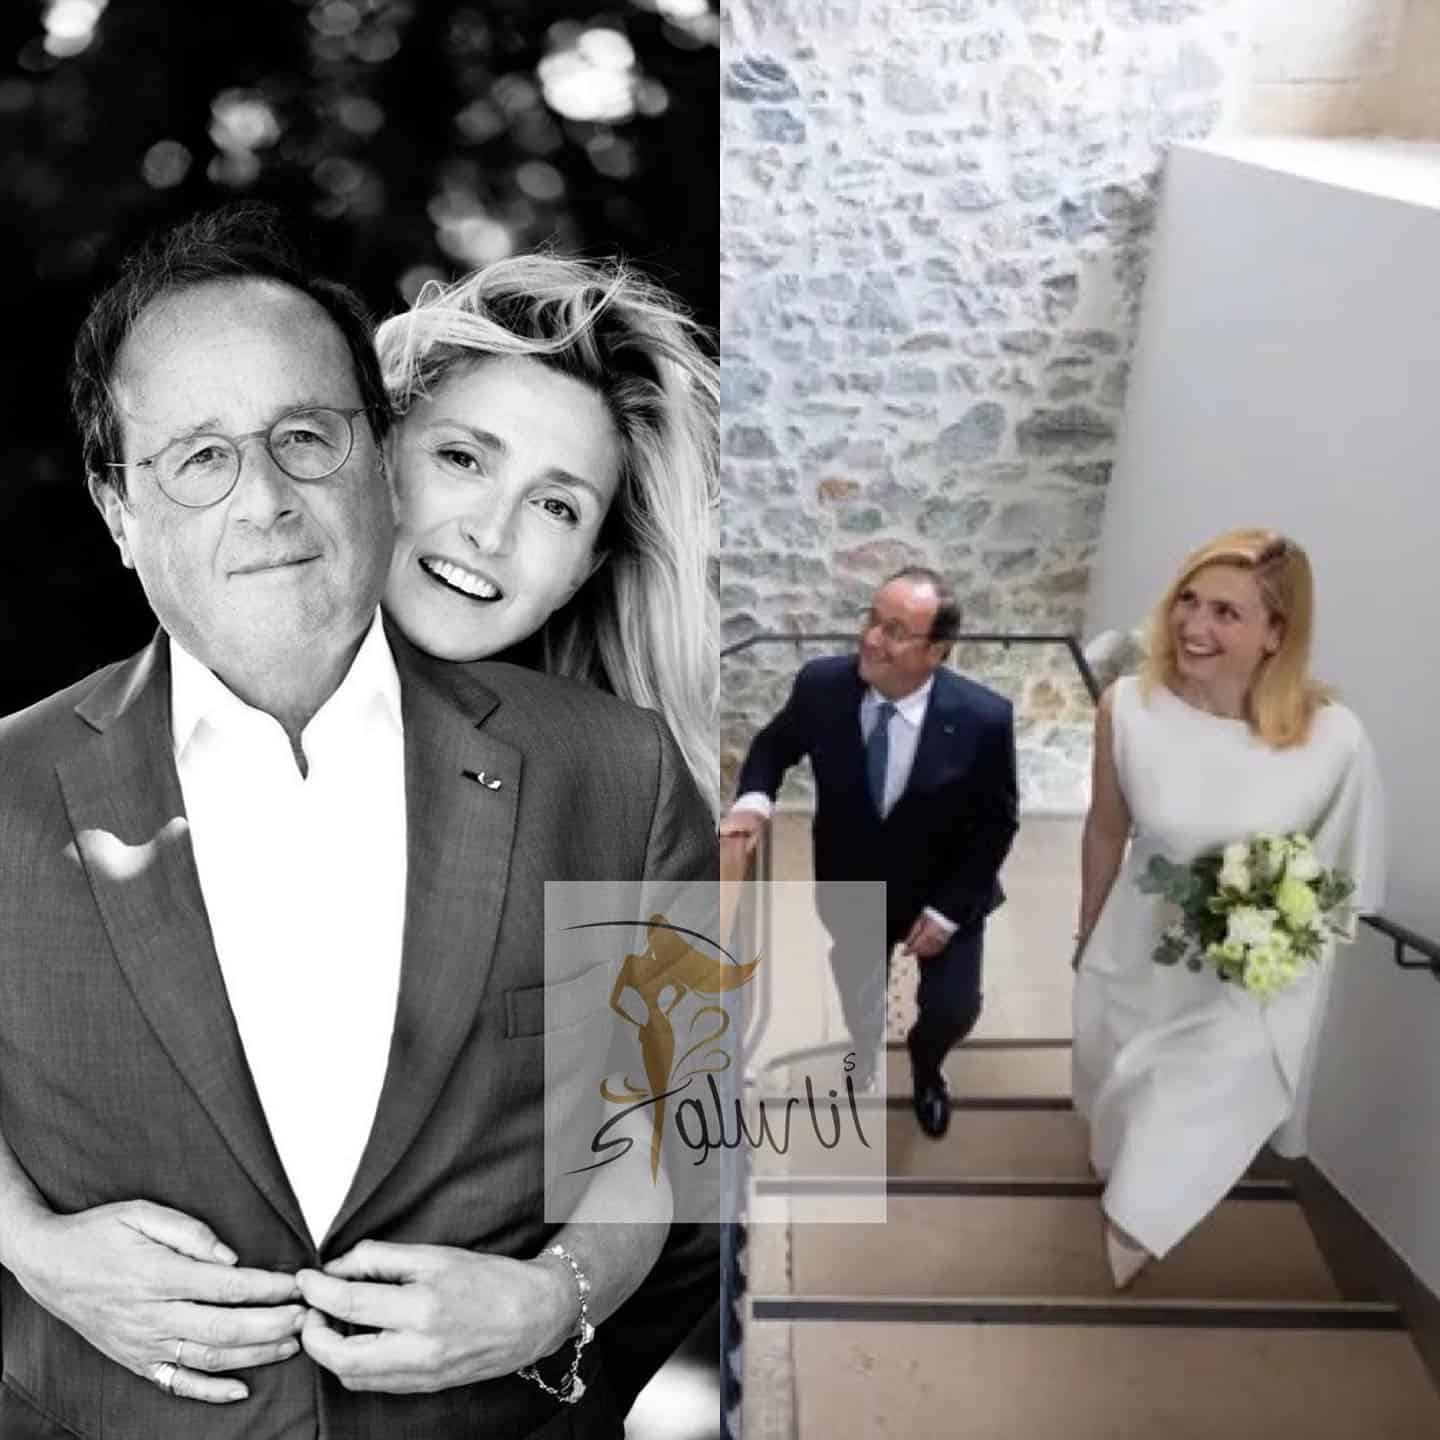 Vjenčanje Francoisa Hollandea i Julie Gayet